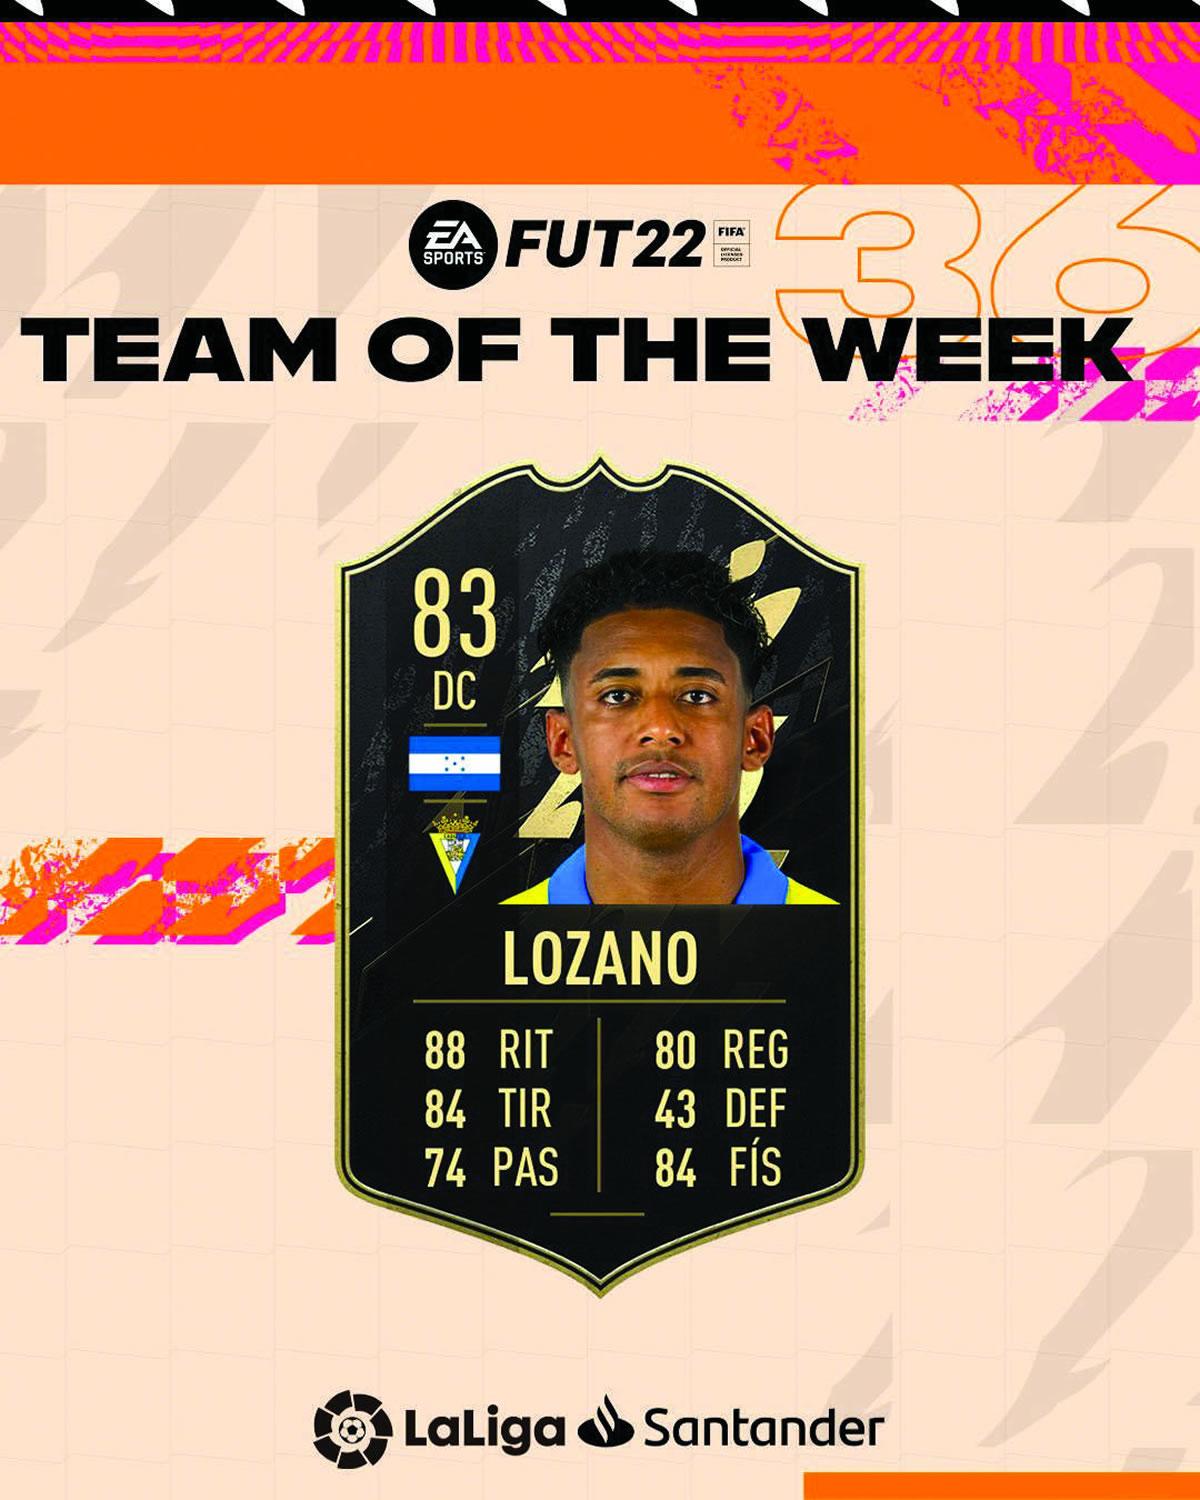 ‘Choco‘ Lozano clavó el gol de la salvación para el Cádiz y fue elegido en el equipo de la semana en el FIFA 2022.